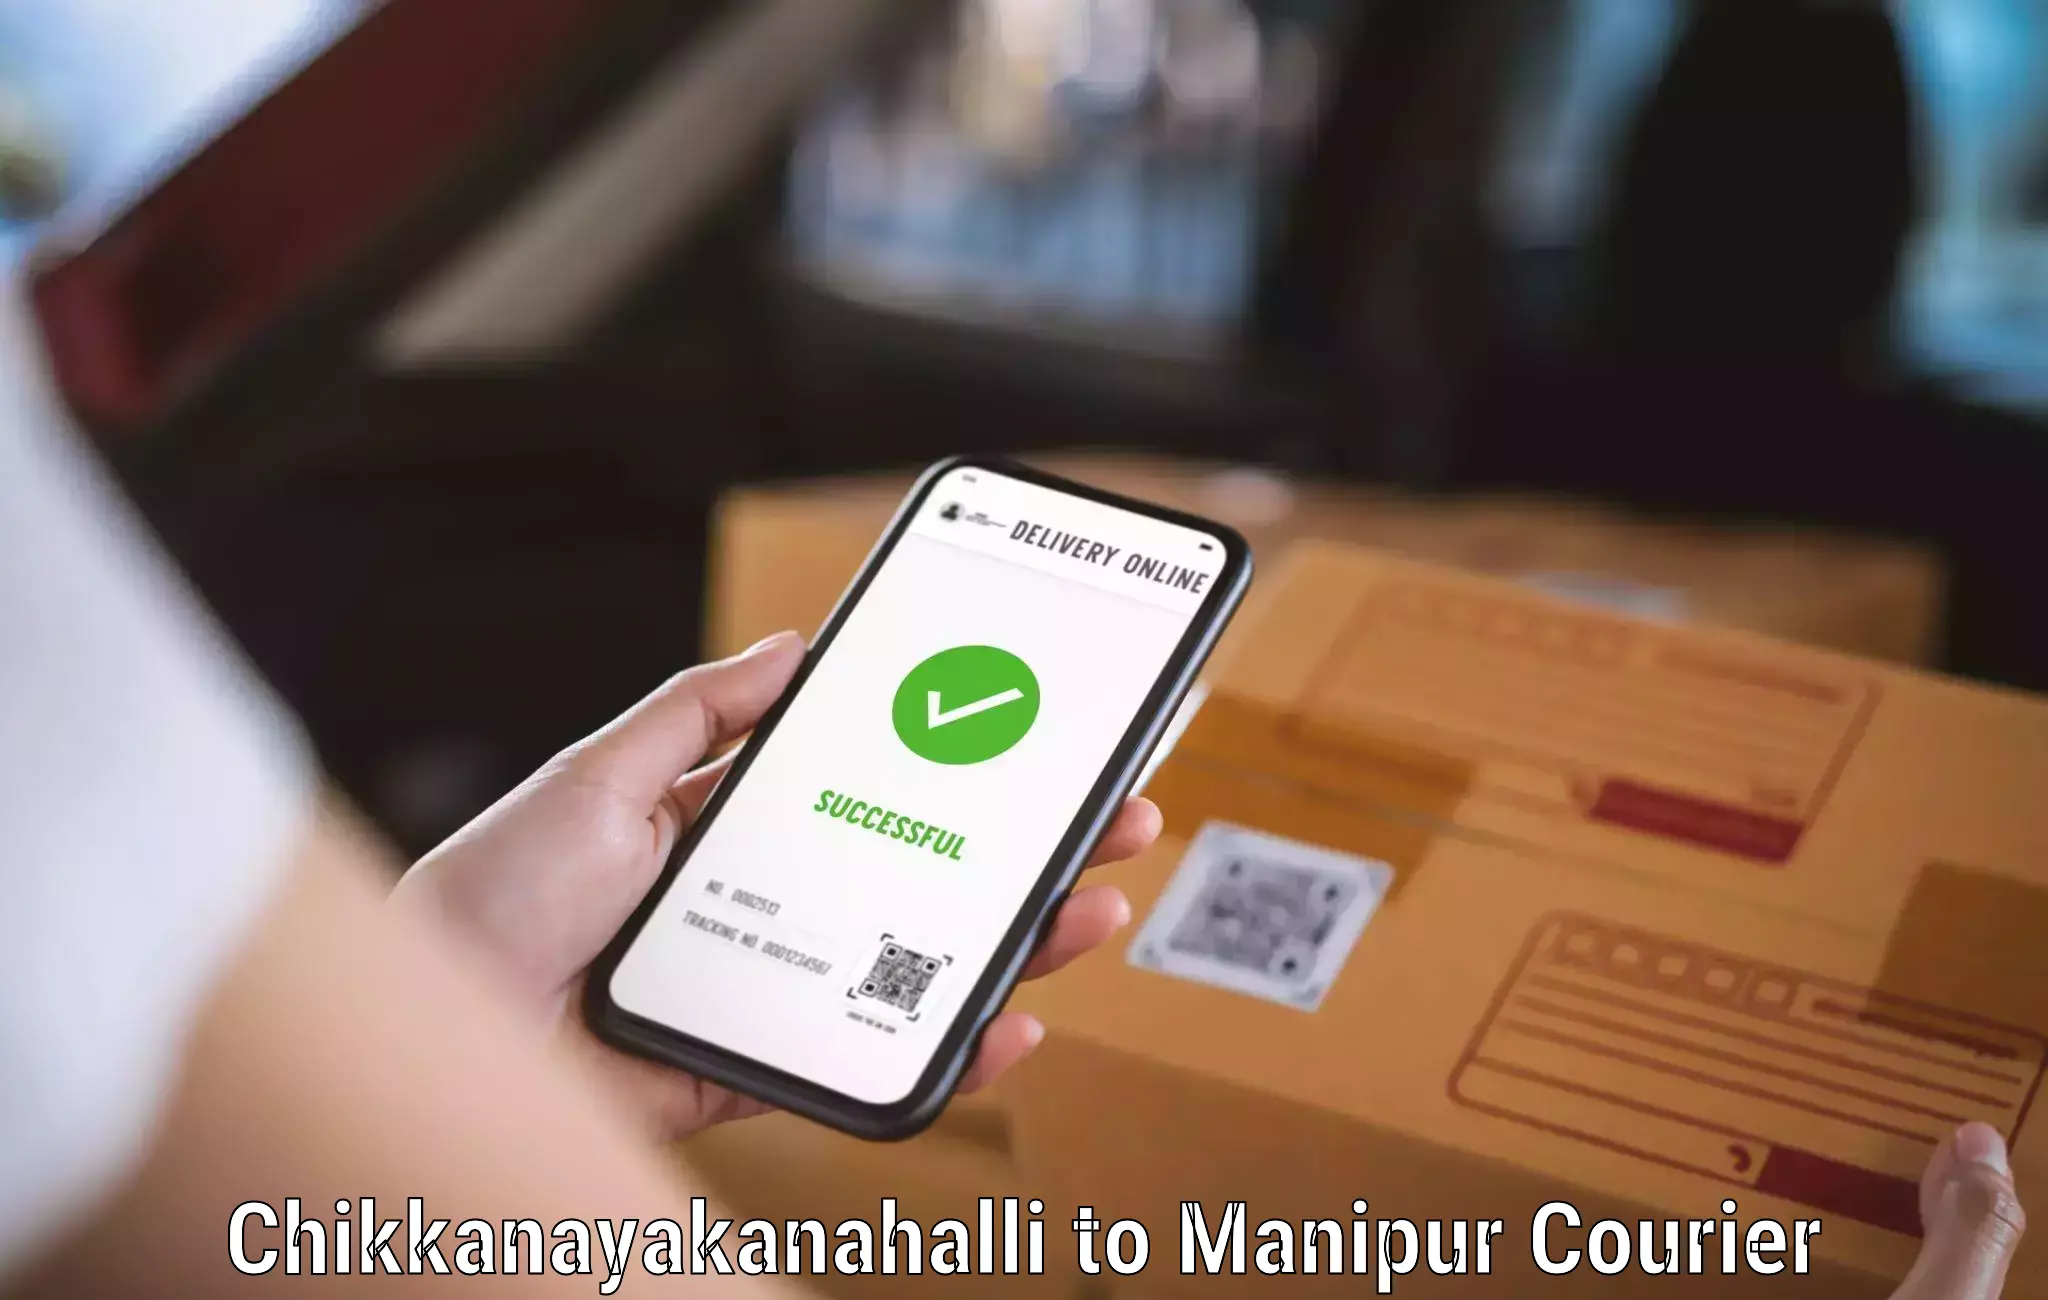 Fast-track shipping solutions Chikkanayakanahalli to Manipur